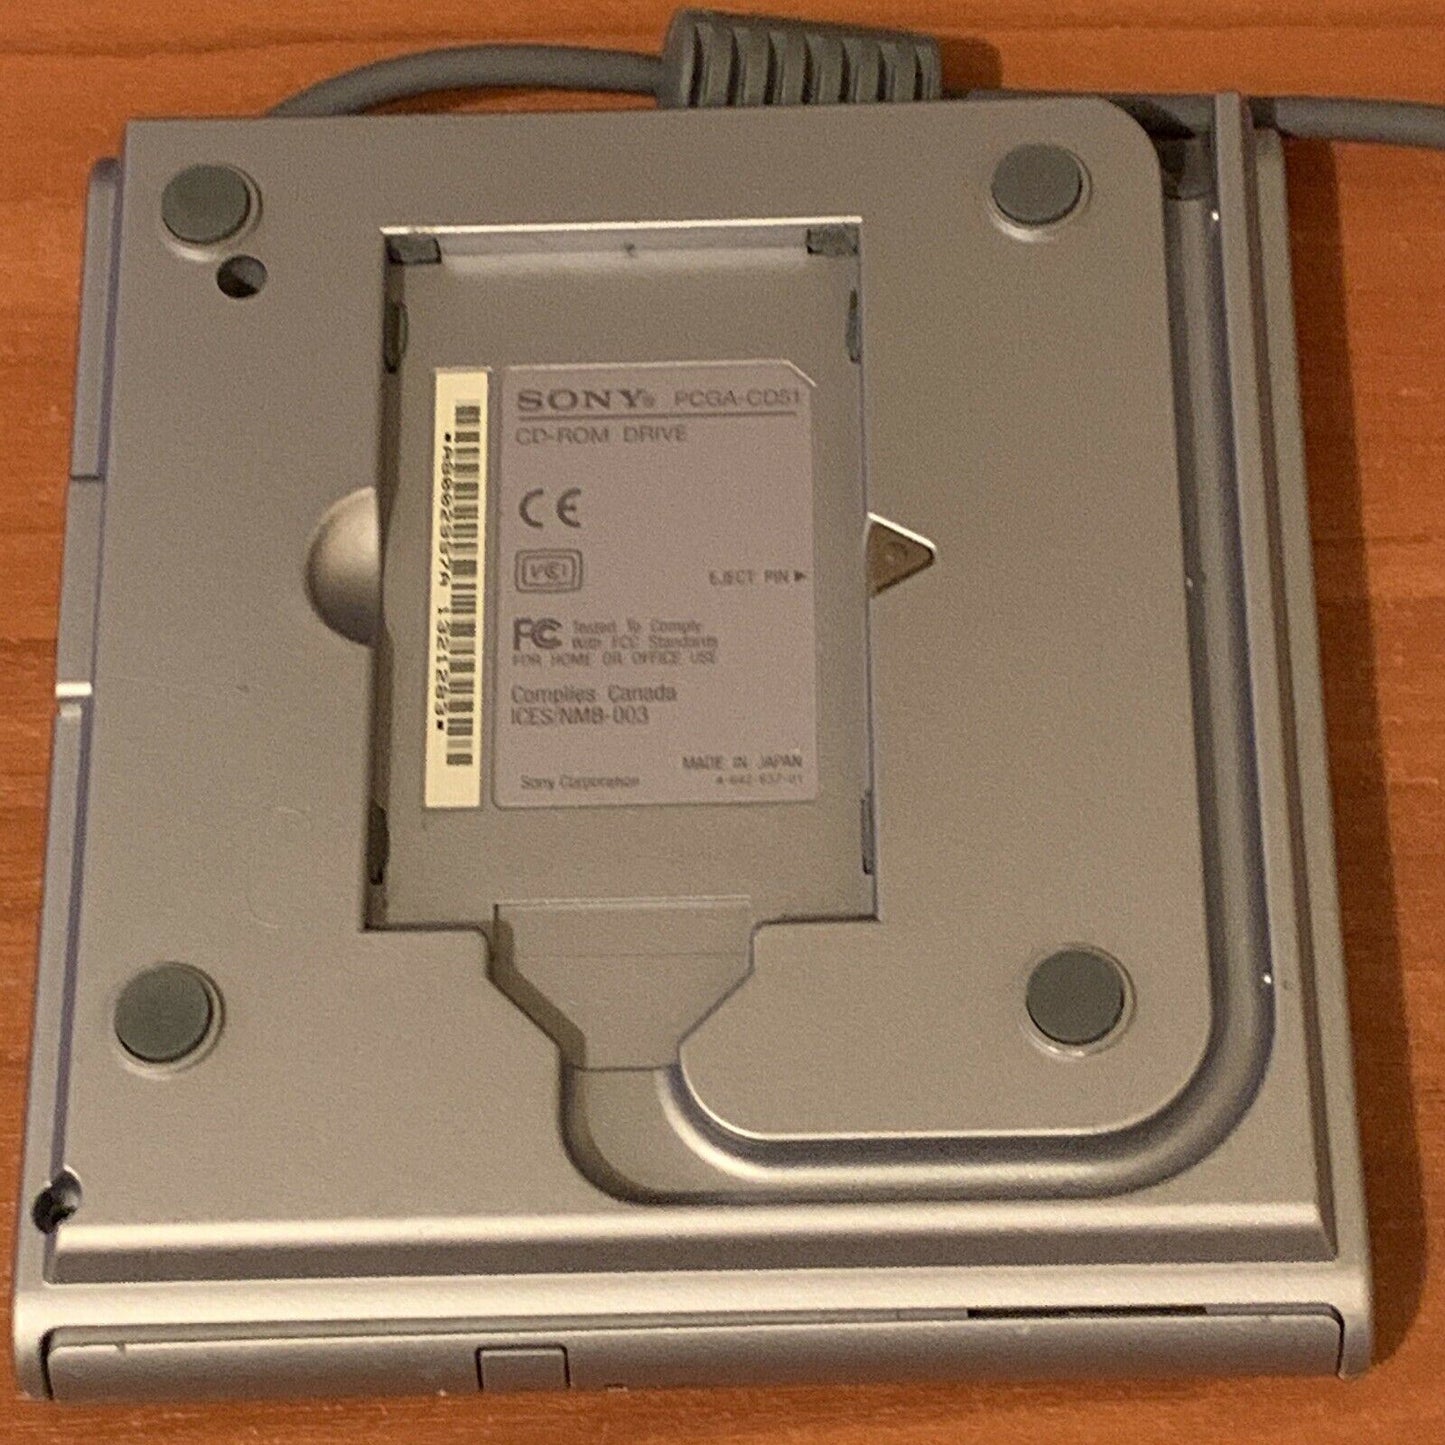 Sony Vaio Portable CD-ROM Drive PCMCIA PCGA-CD51/A